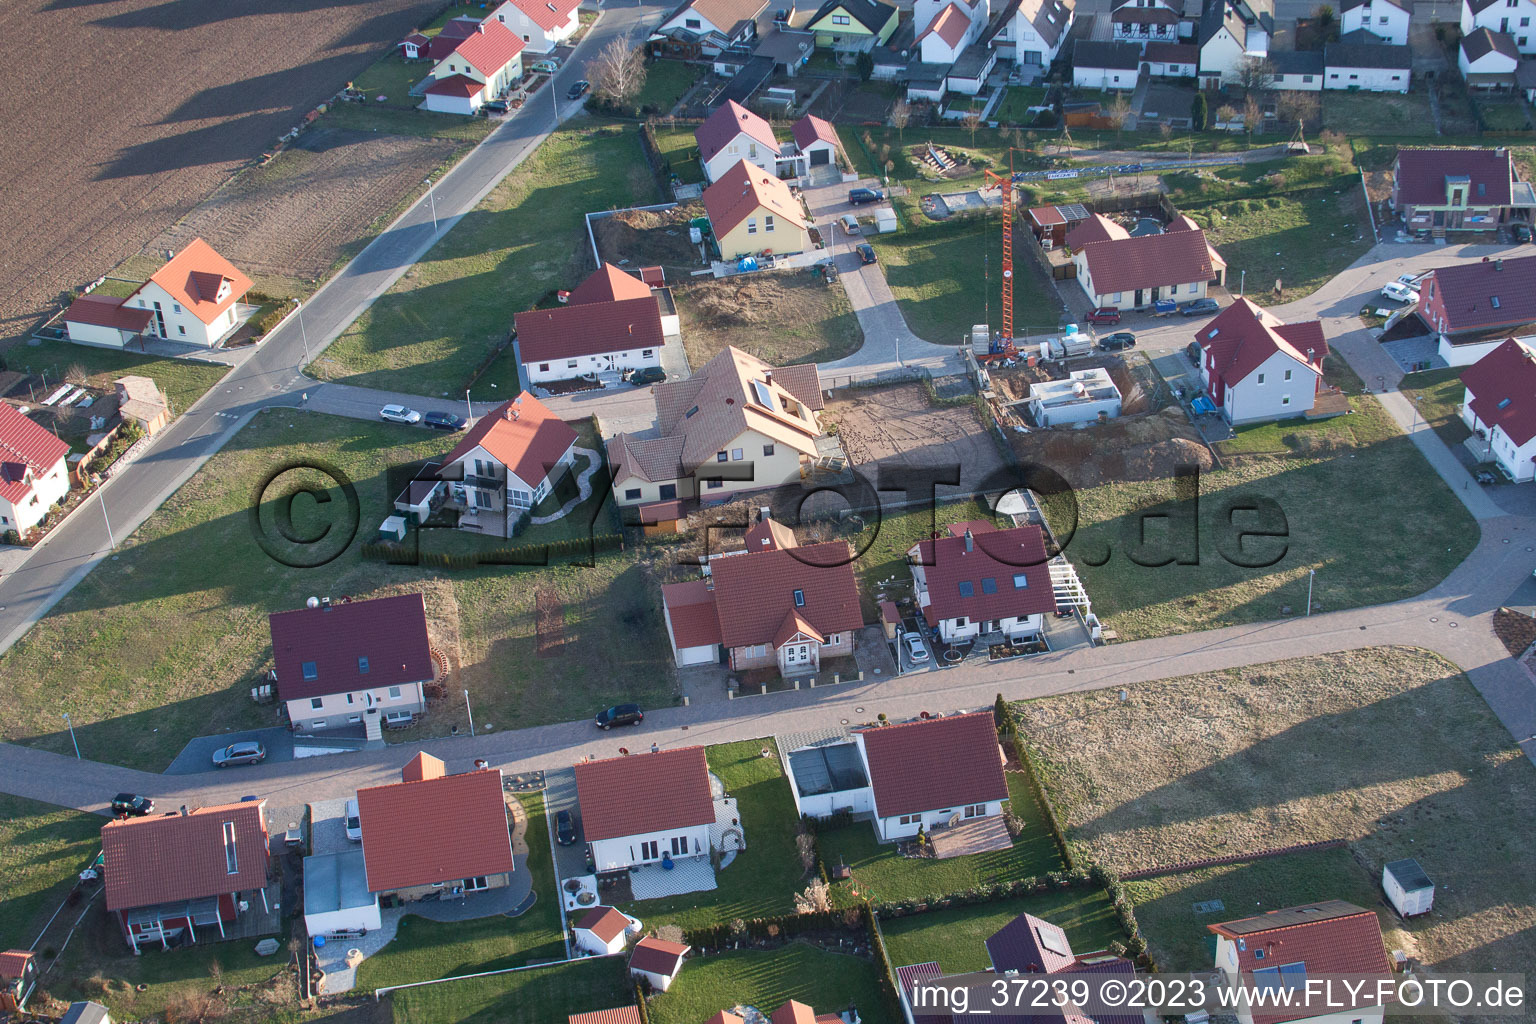 Schaidt Neubaugebiet NO in Wörth am Rhein im Bundesland Rheinland-Pfalz, Deutschland von der Drohne aus gesehen